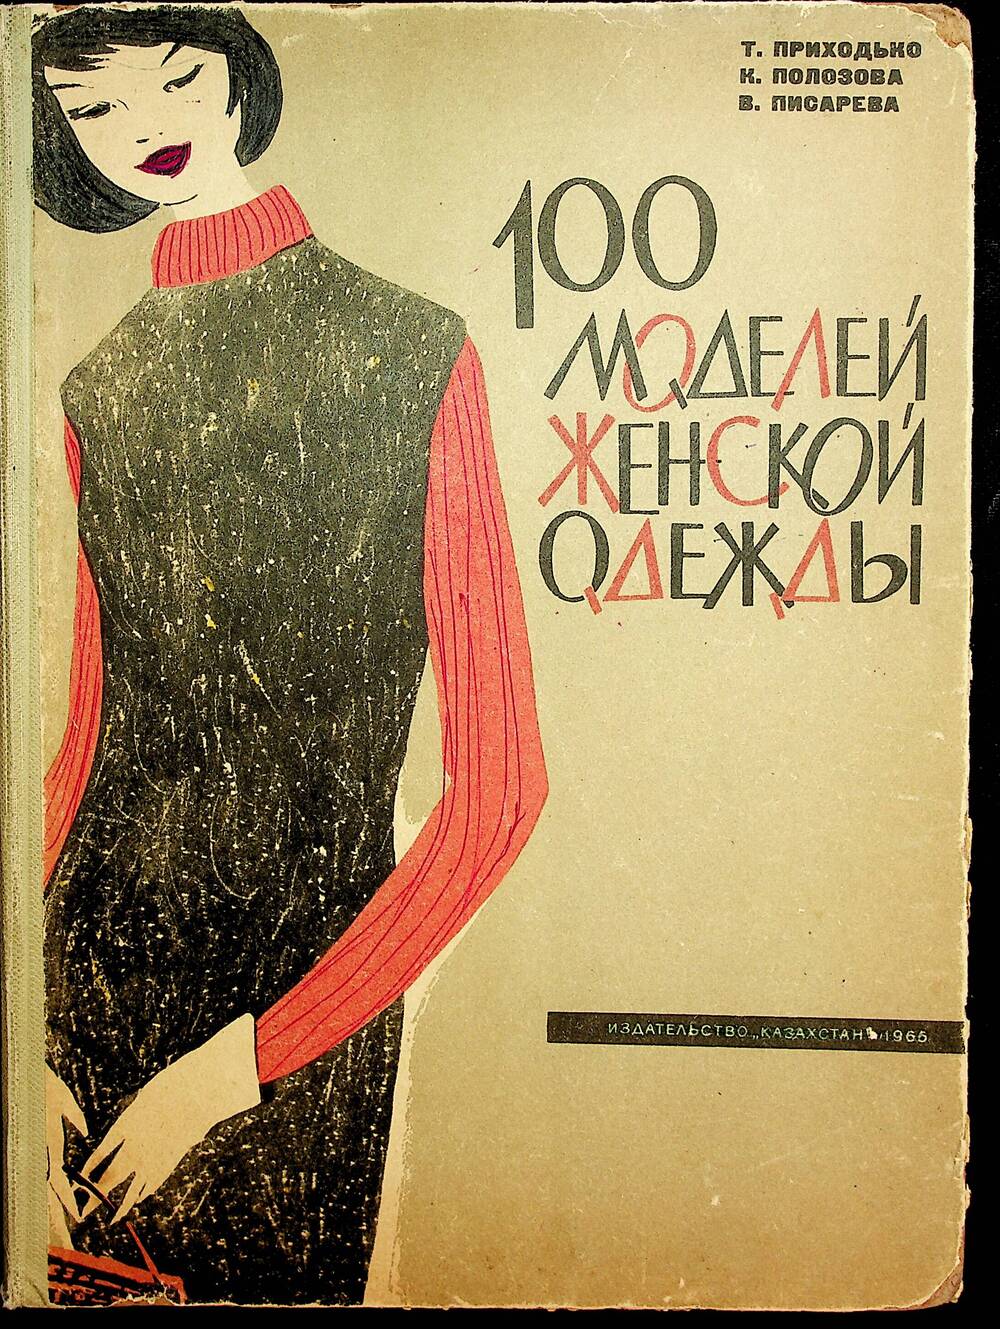 Книга.  Приходько Т.,  Полозова К., Писарева В. 100 моделей женской одежды.